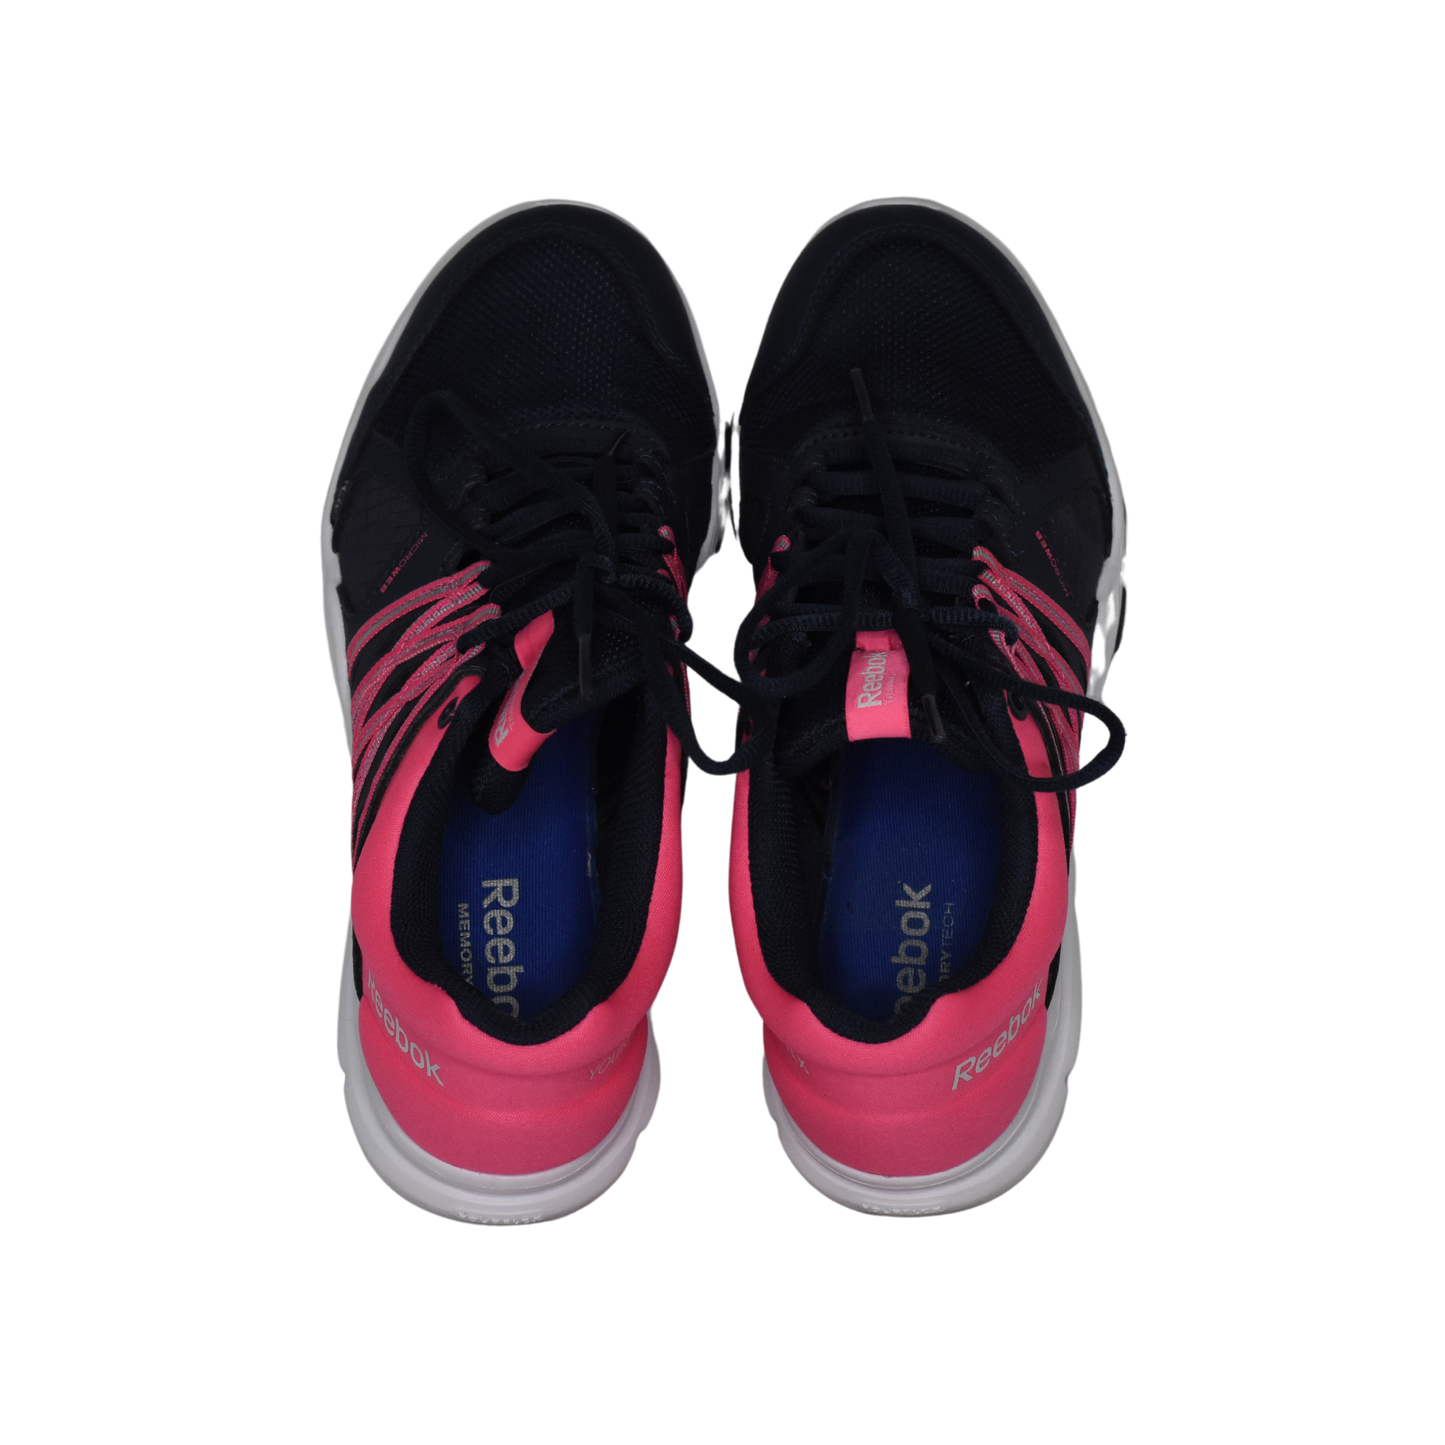 Reebok Sneakers Navy, Hot Pink Size 7.5 SKU 000093-4